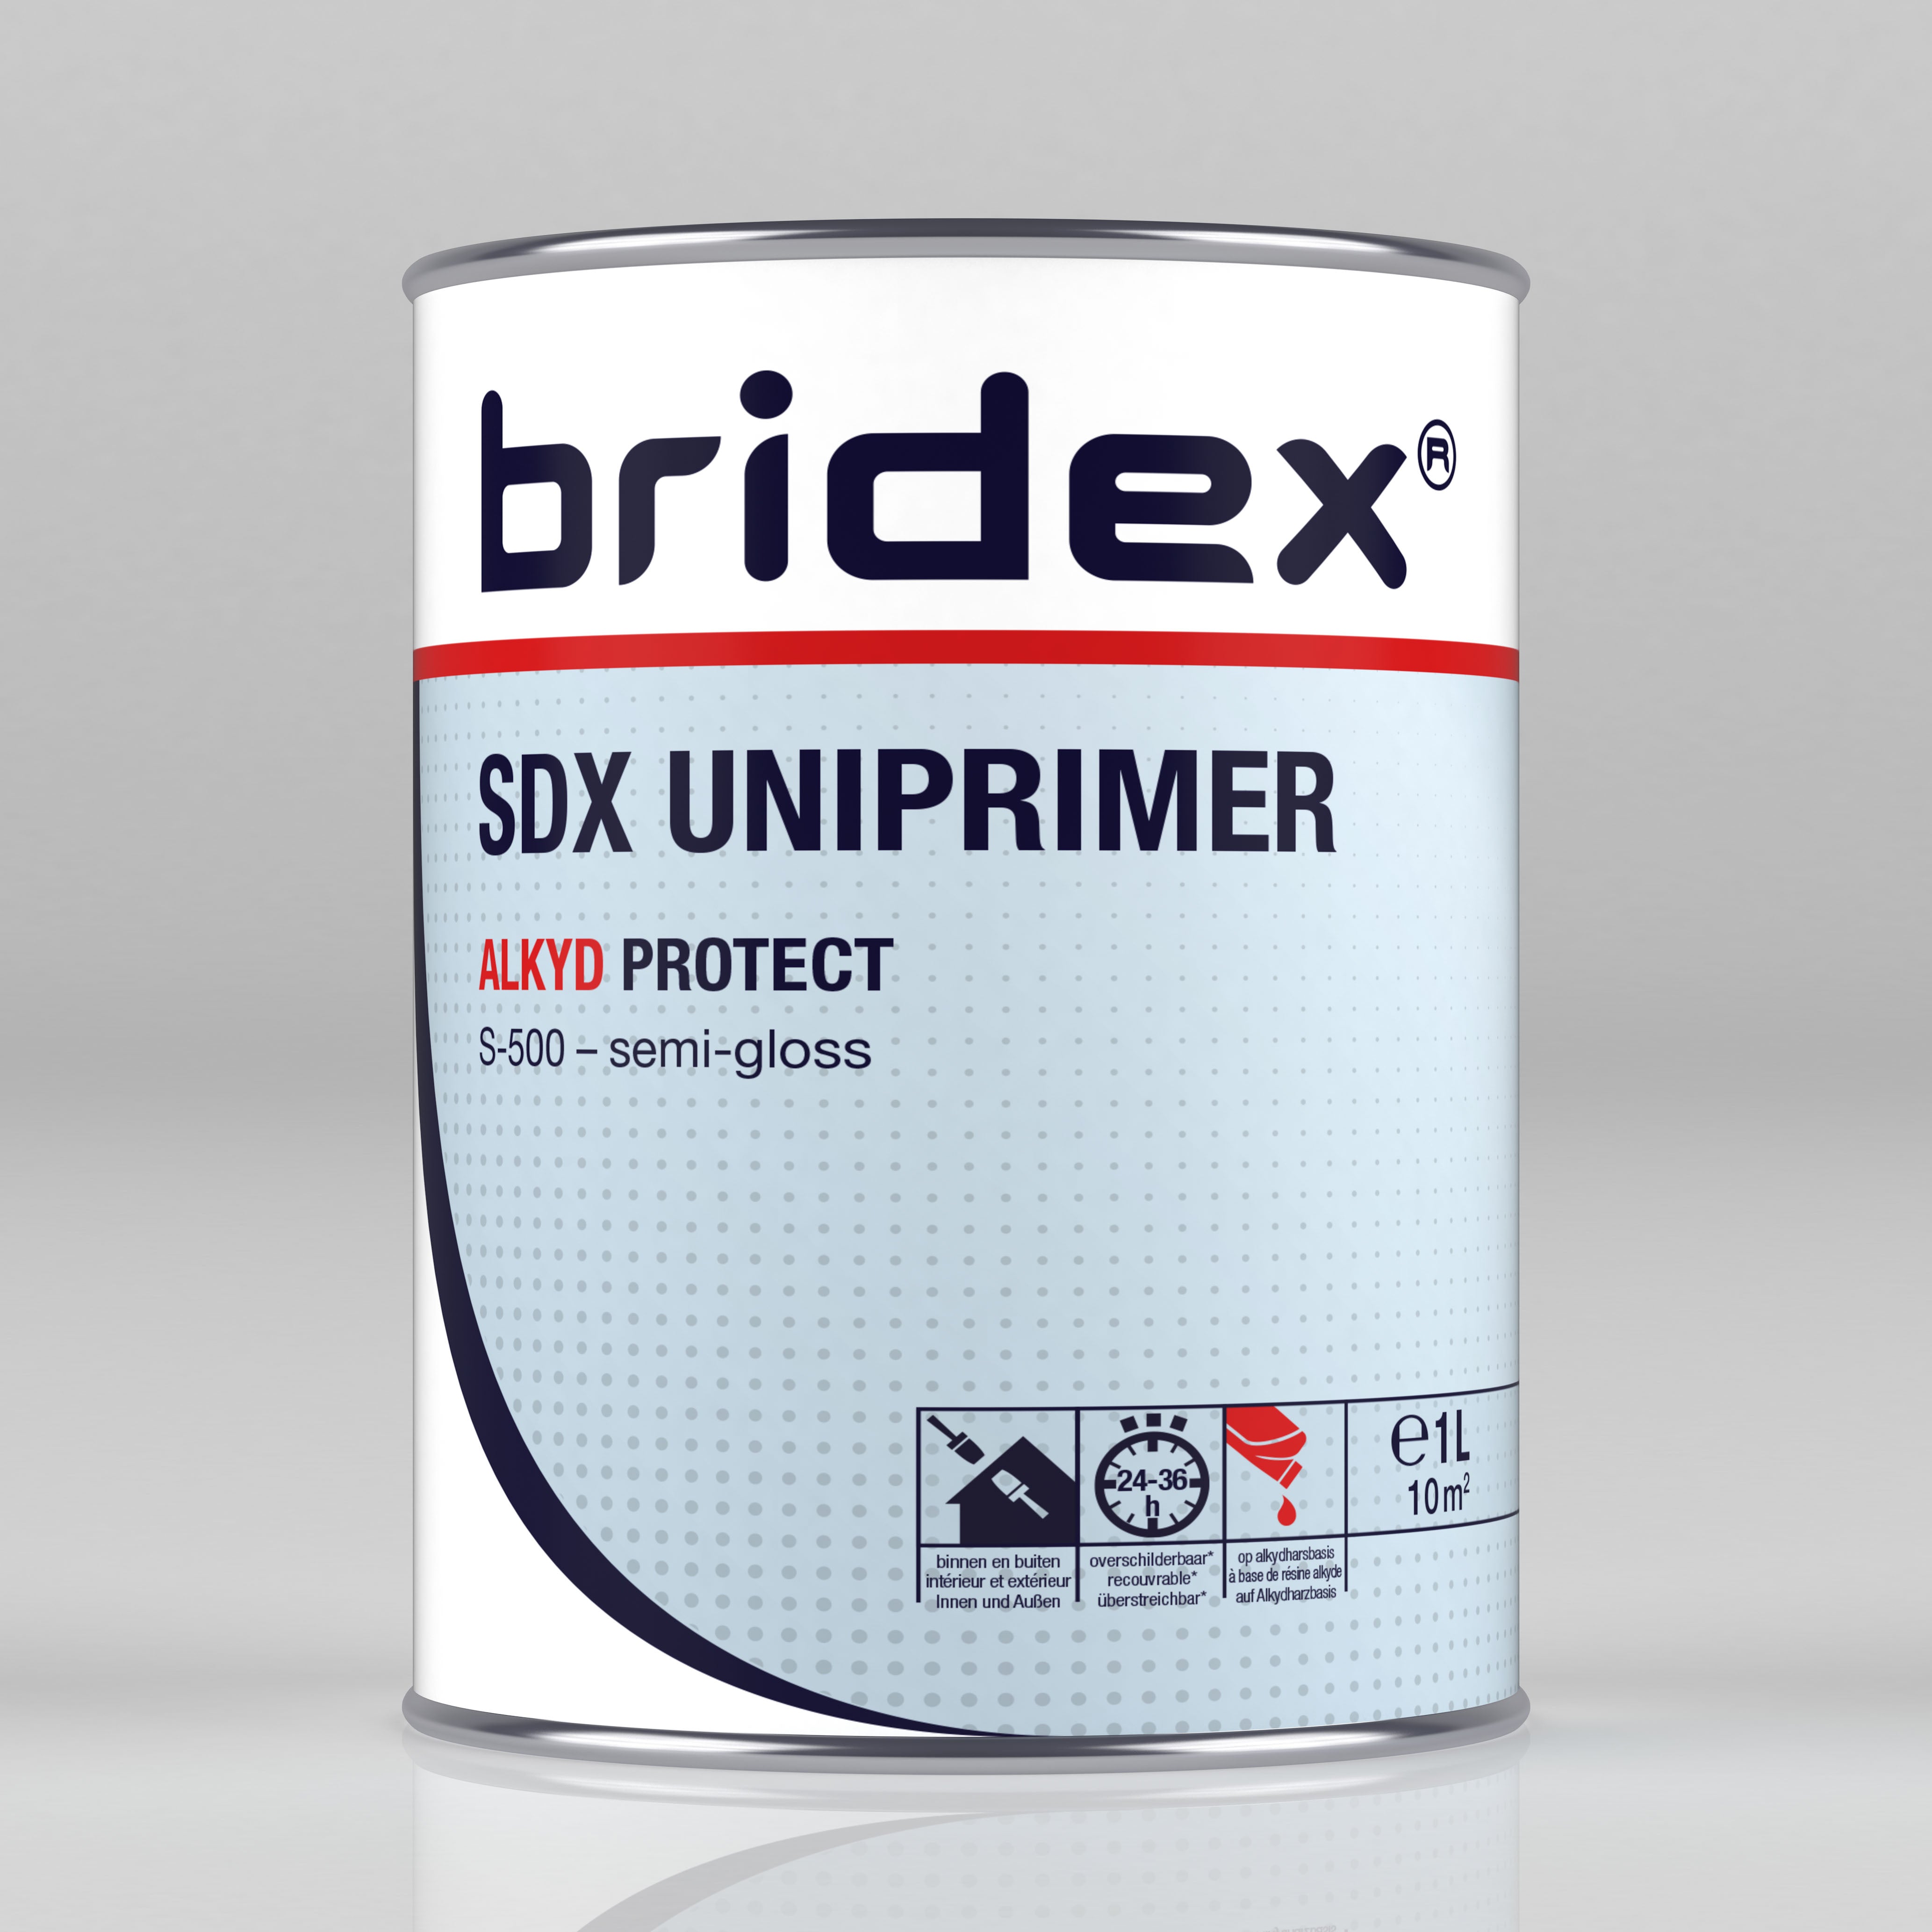 SDX Grundierung Uni Primer ALKYD Protect ⎥ bridex® ⎥ 1 Liter